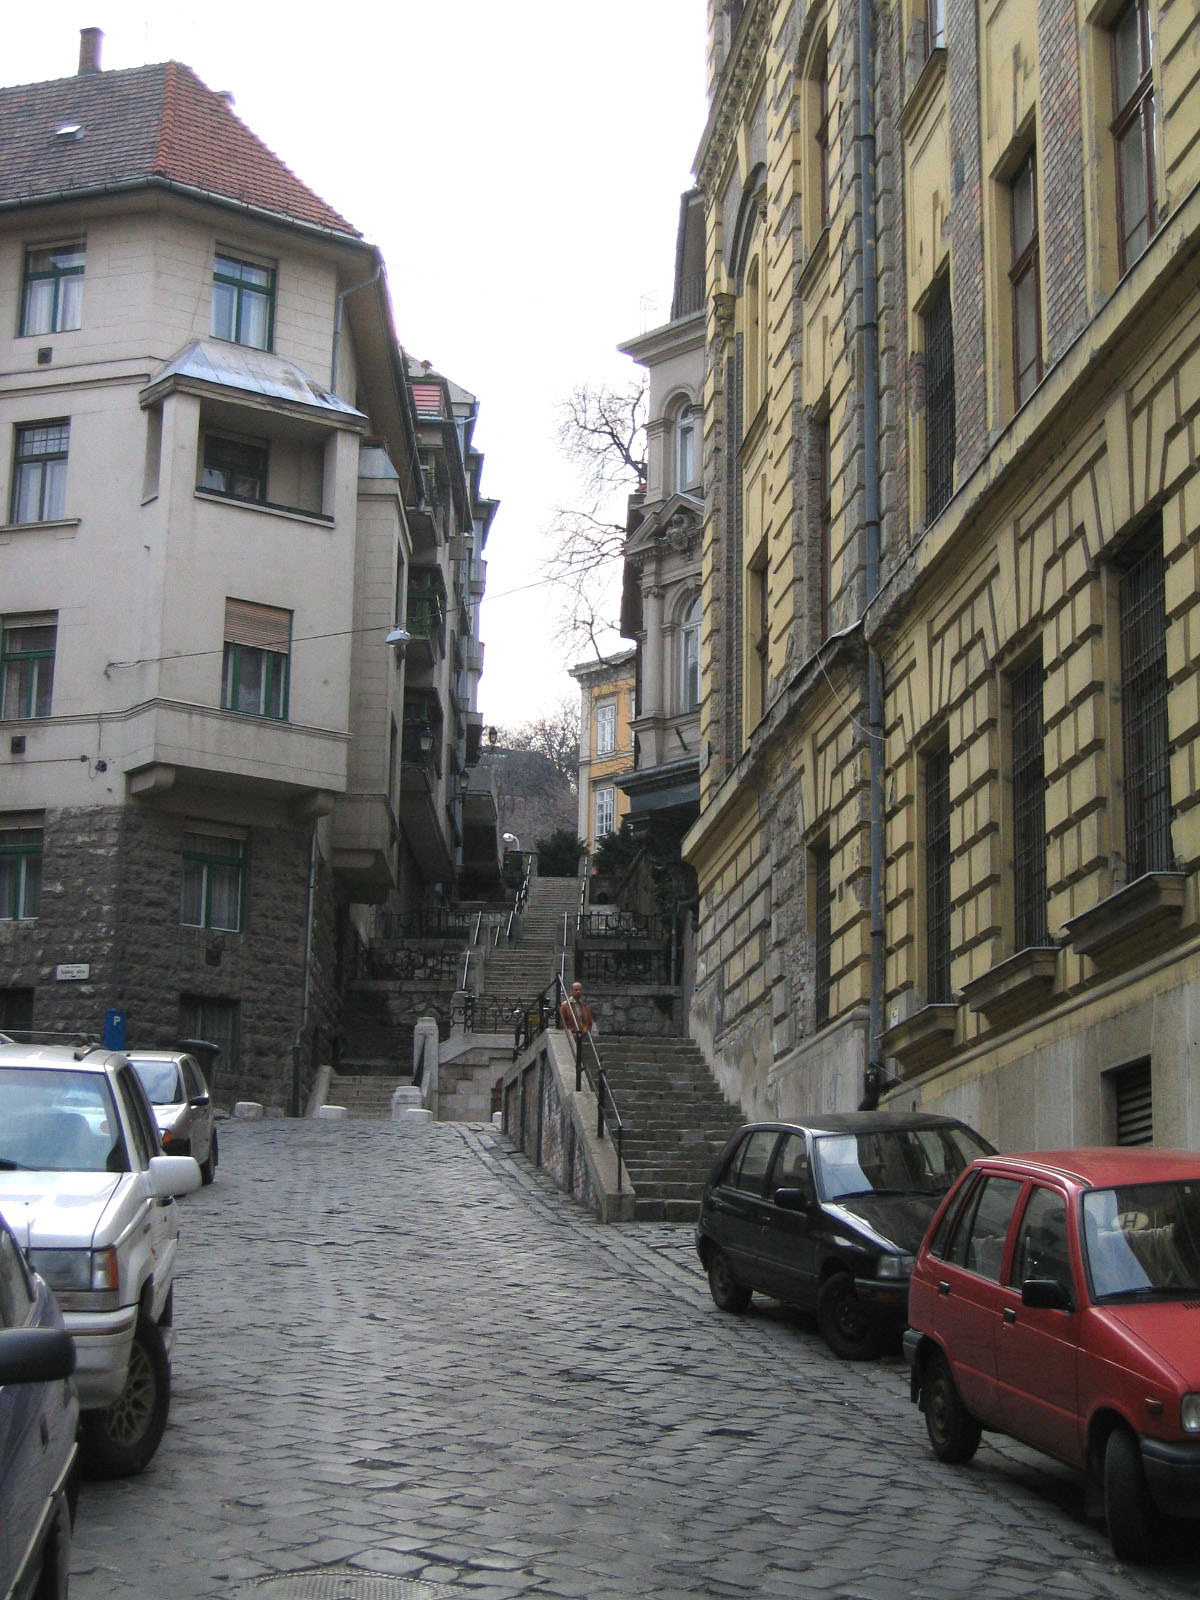 Ponty street steps